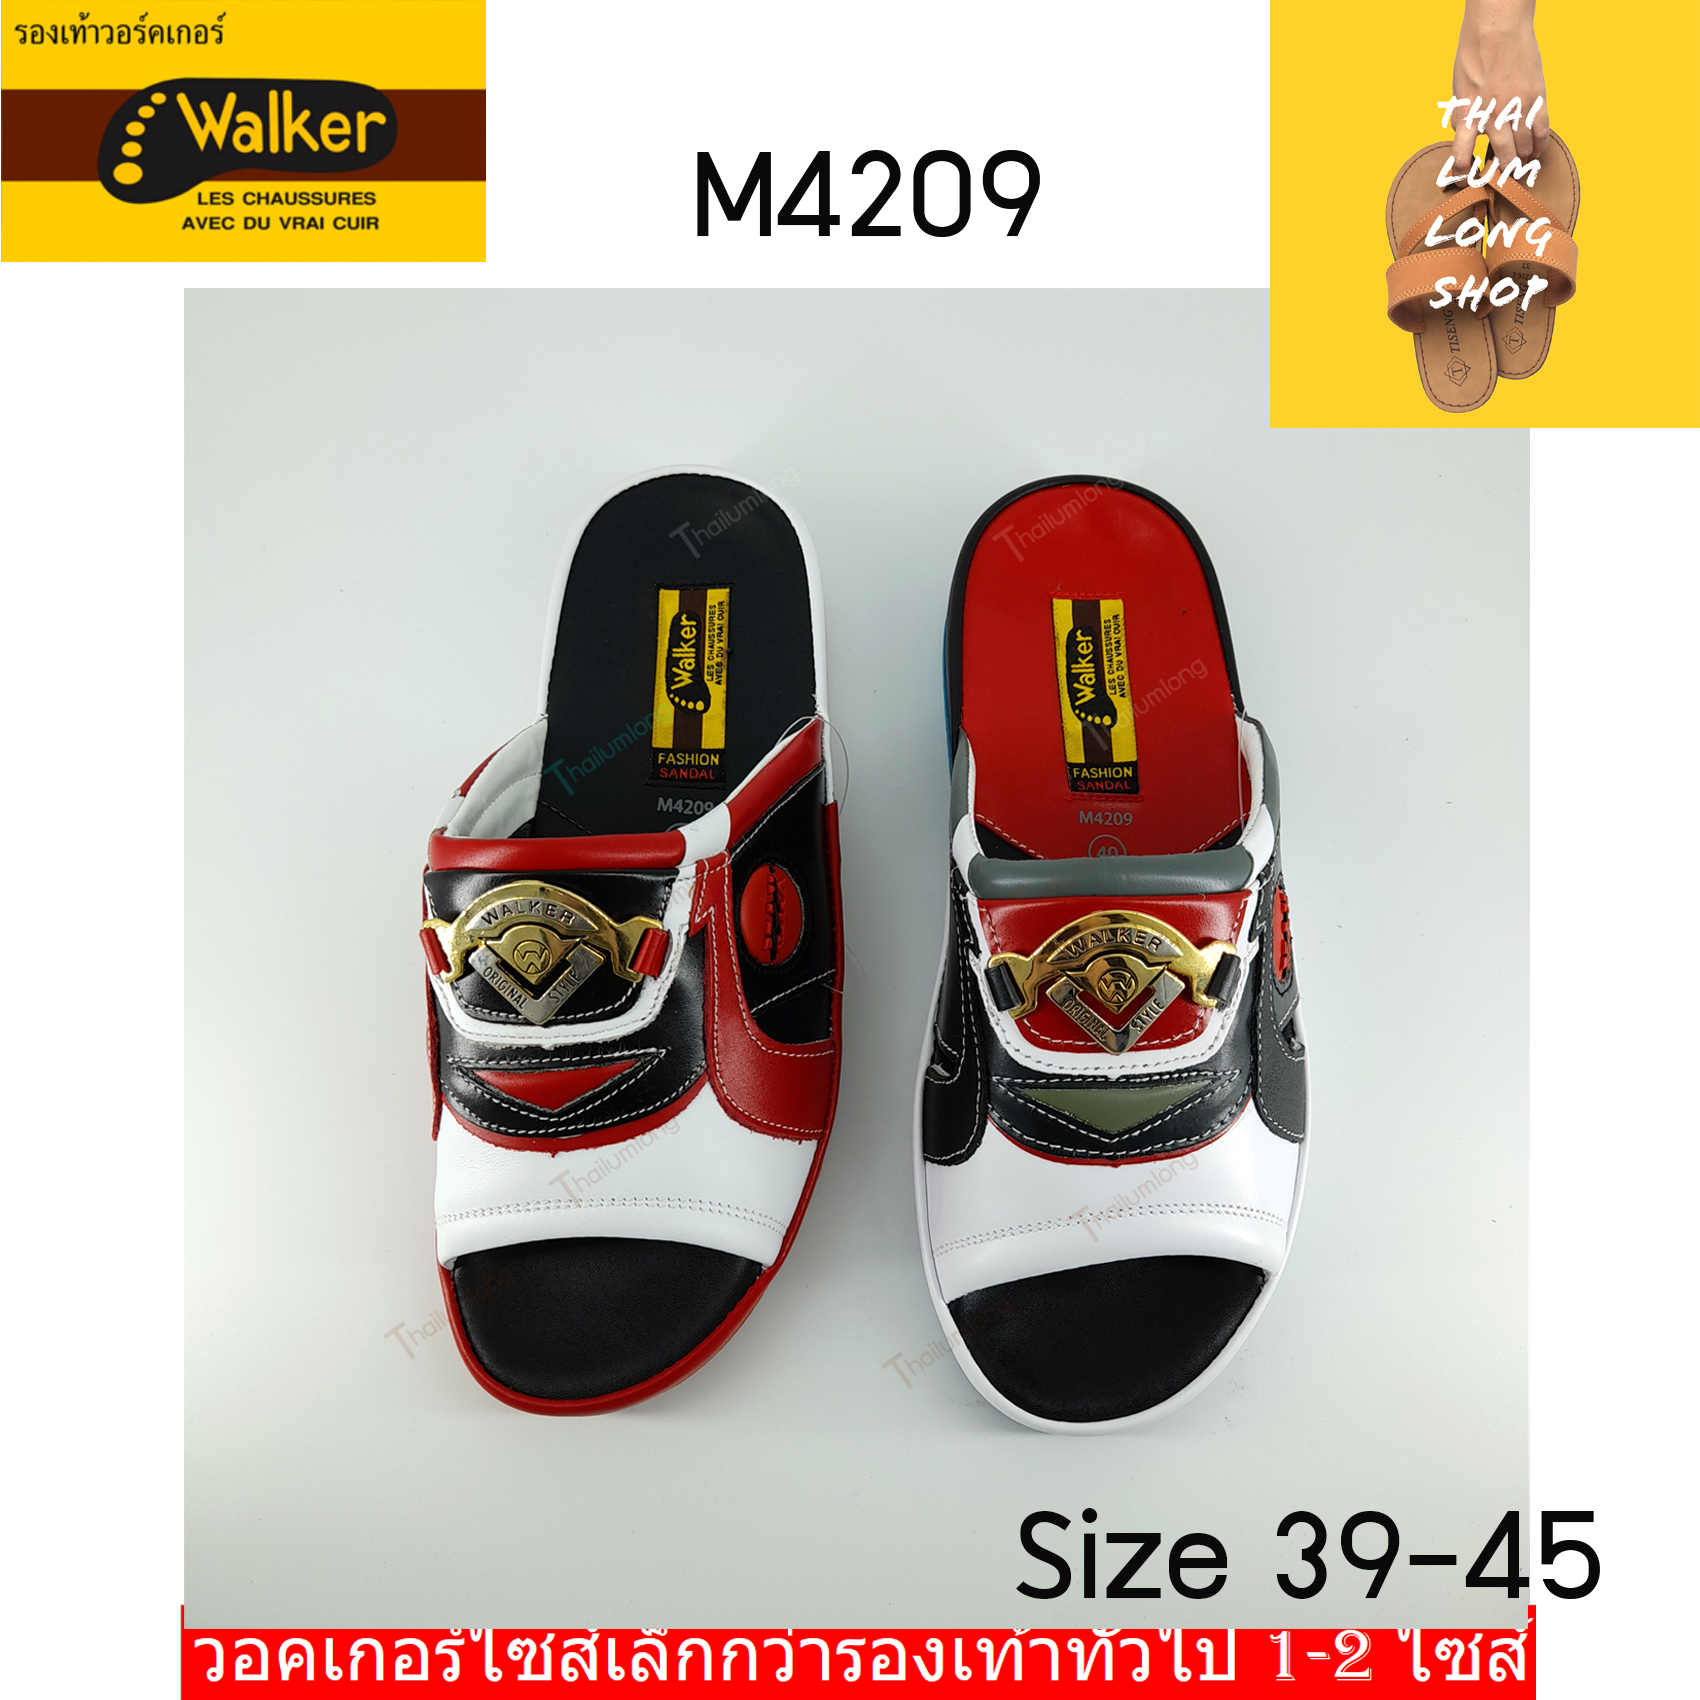 Thai Lumlong Walker รองเท้าแตะชาย รองเท้าสุภาพบุรุษ รองเท้าเพื่อสุขภาพ รองเท้าแตะหนังแท้ รองเท้าลำลอง รุ่น M4209 (สไตล์เทวิน) สีดำ ขนาด 39/40/41/42/43/44/45